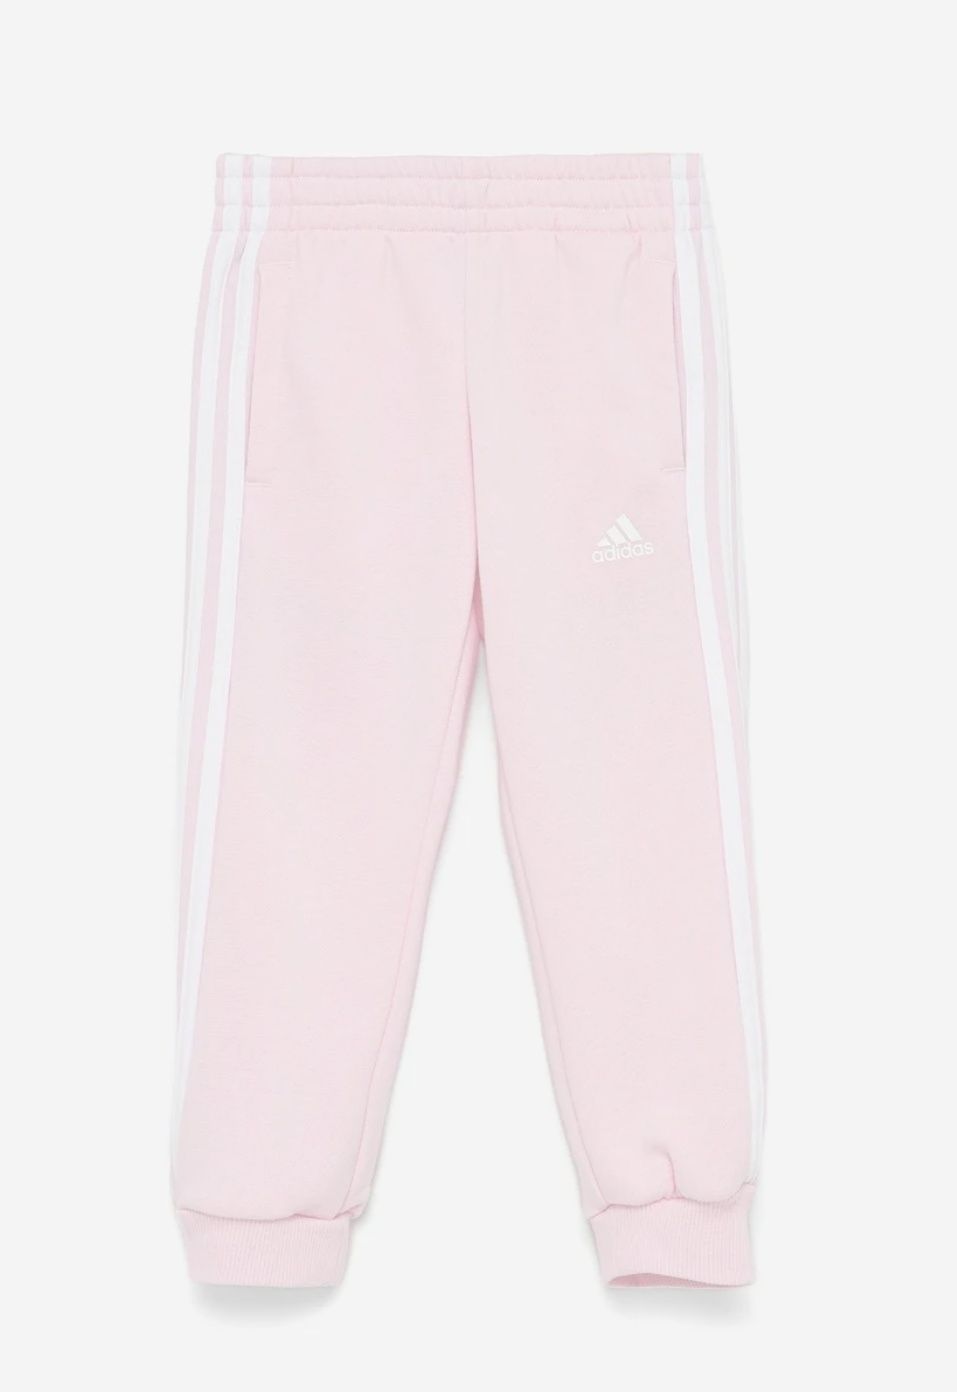 SarBut Adidas spodnie dresowe dziewczęce rozmiar 116 cm